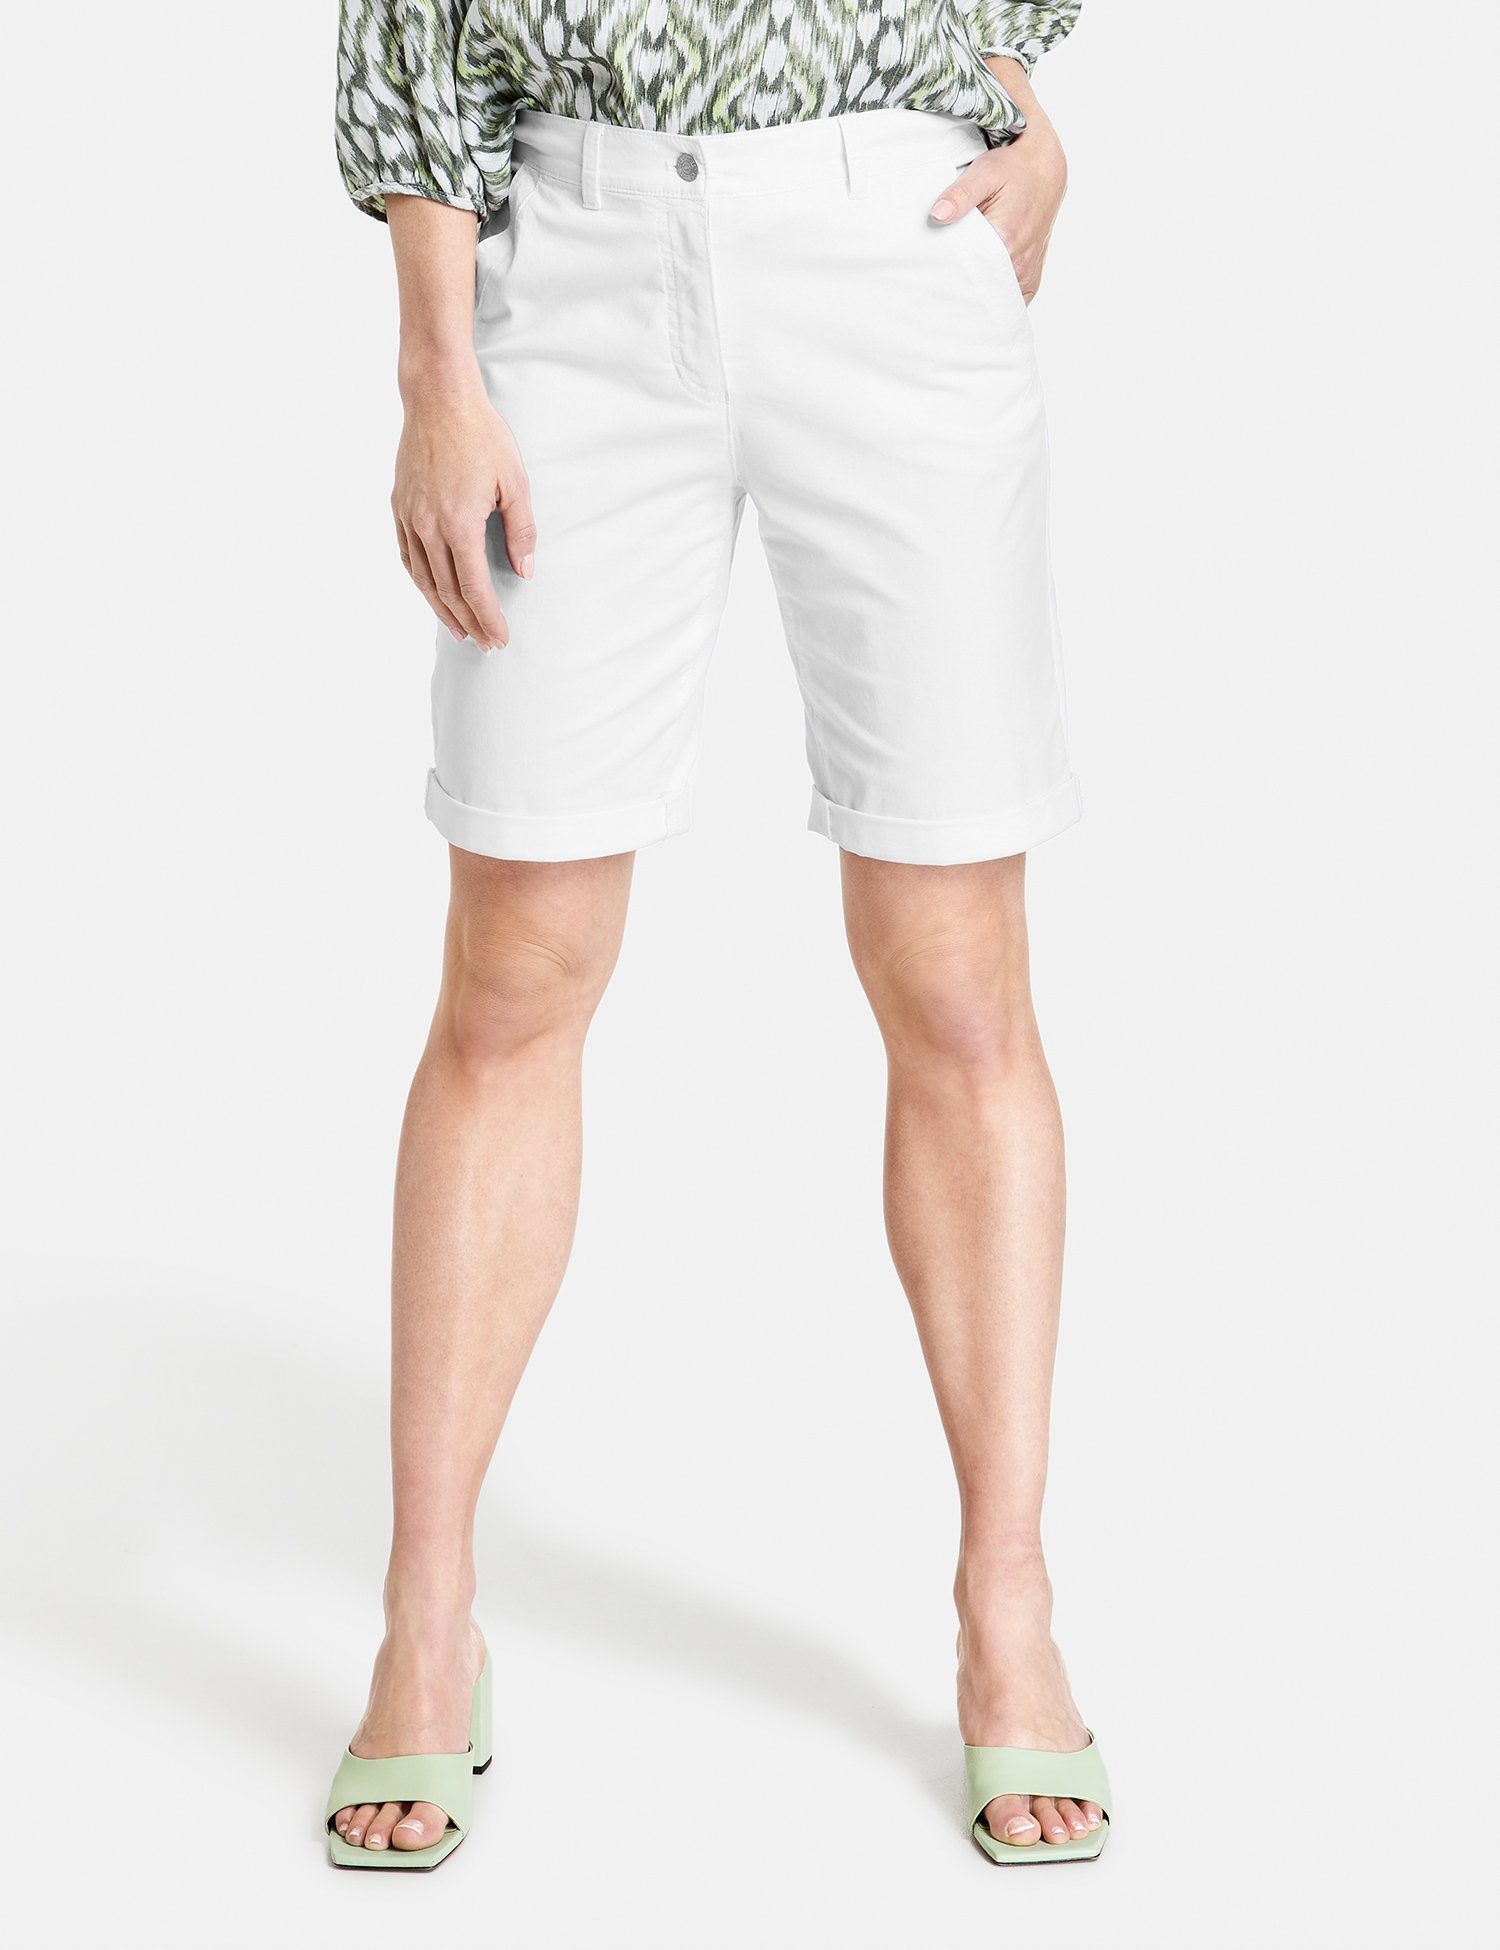 GERRY WEBER 7/8-Hose Shorts mit Saum gekrempeltem weiß/weiß